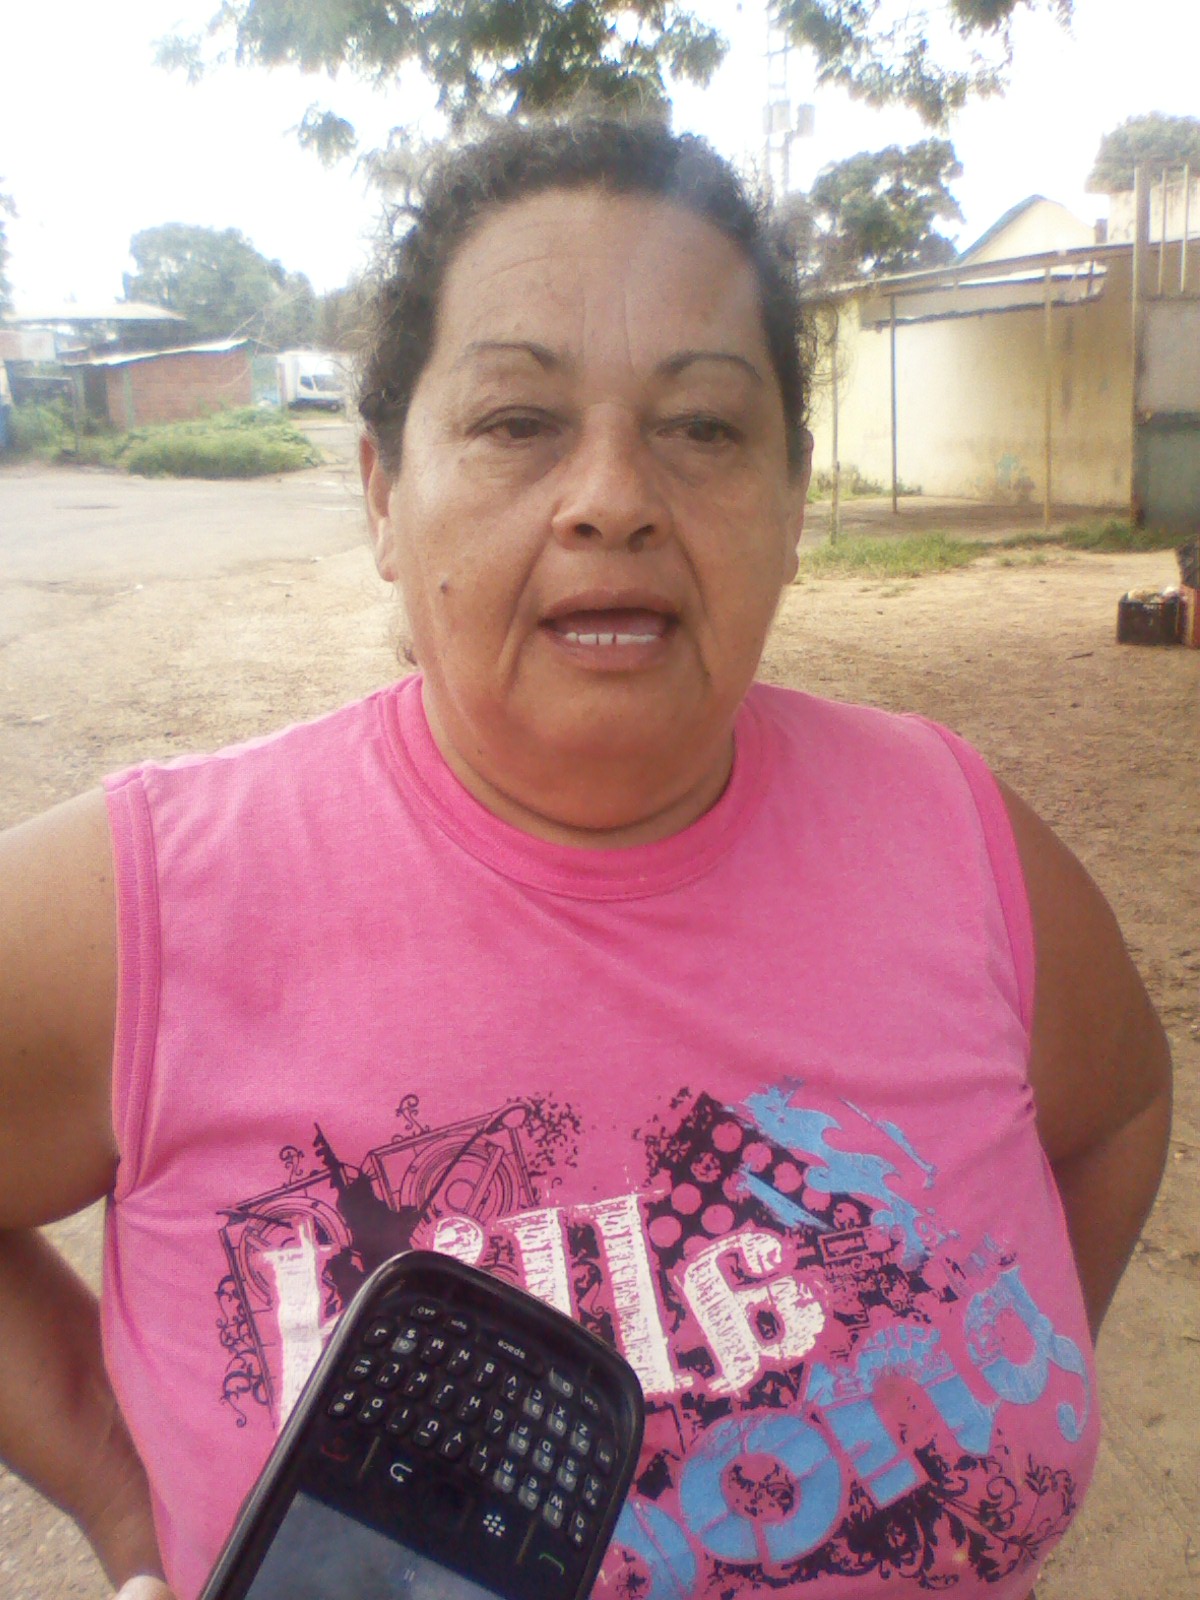 Zuly Figuera (camiseta rosada) dijo que ante la falta de asistencia este derrame de aguas servidas los mantiene afectados 